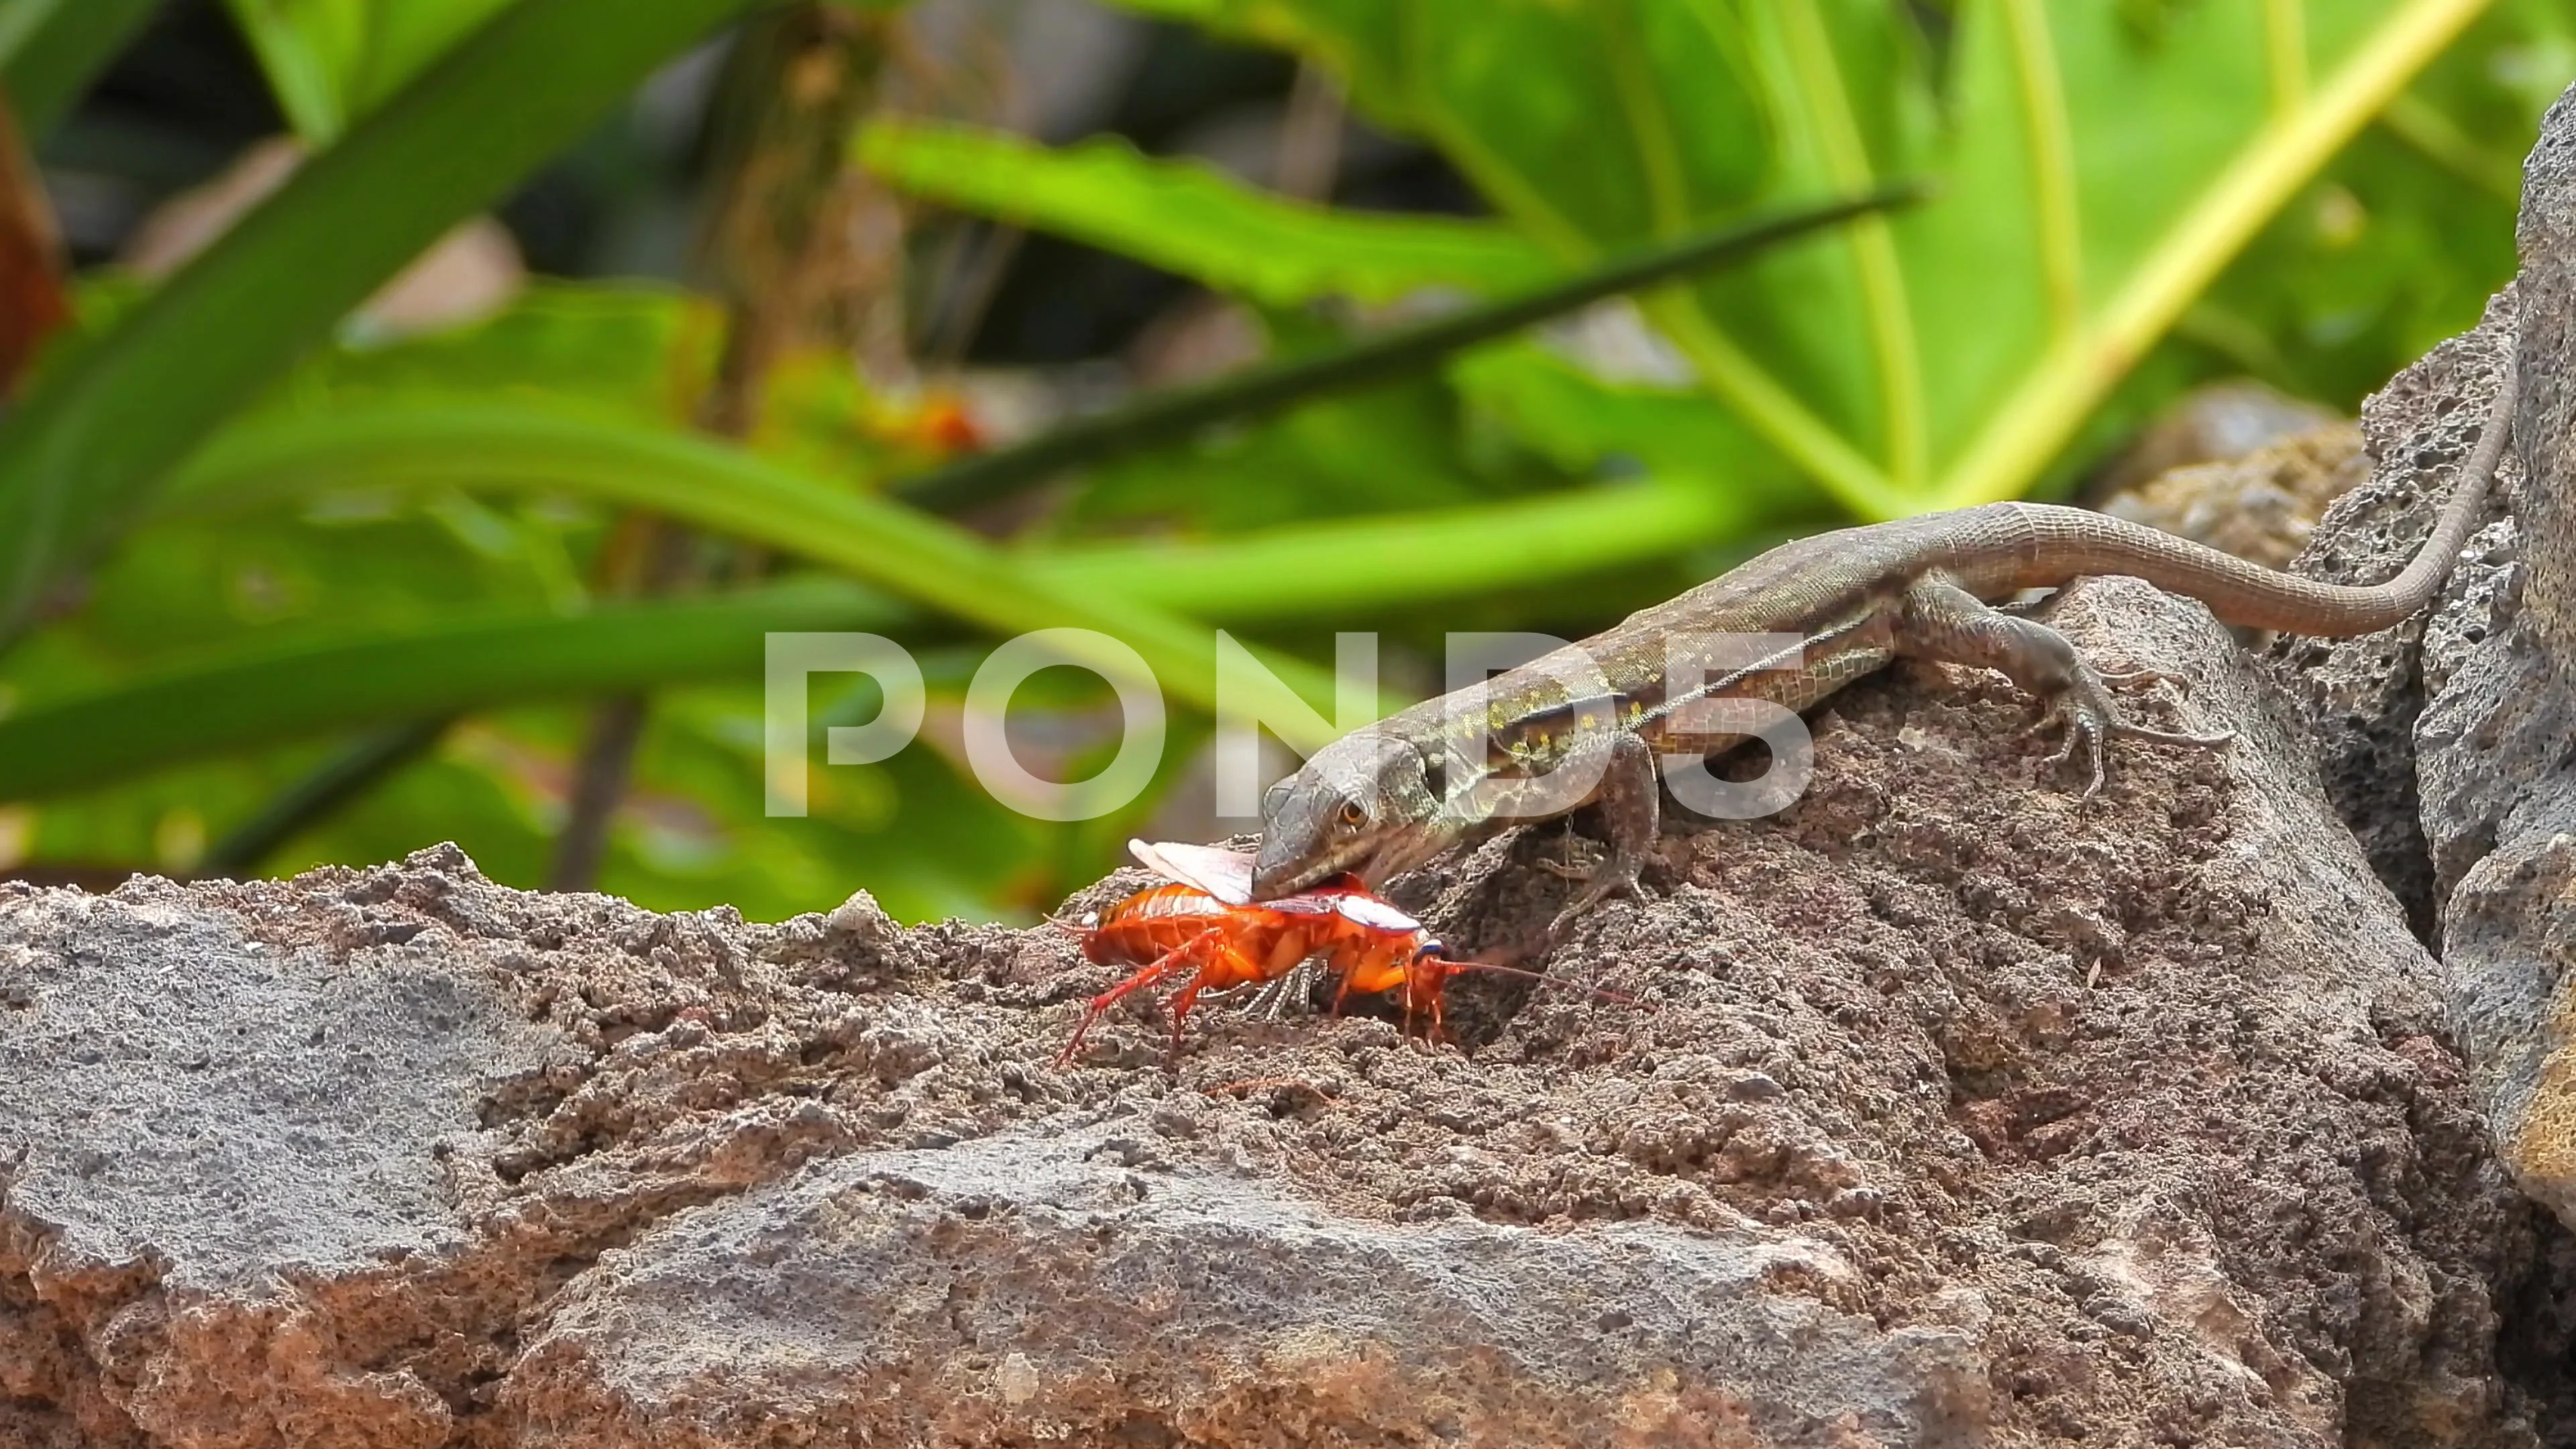 https://images.pond5.com/lizard-catching-cockroach-footage-137648838_prevstill.jpeg